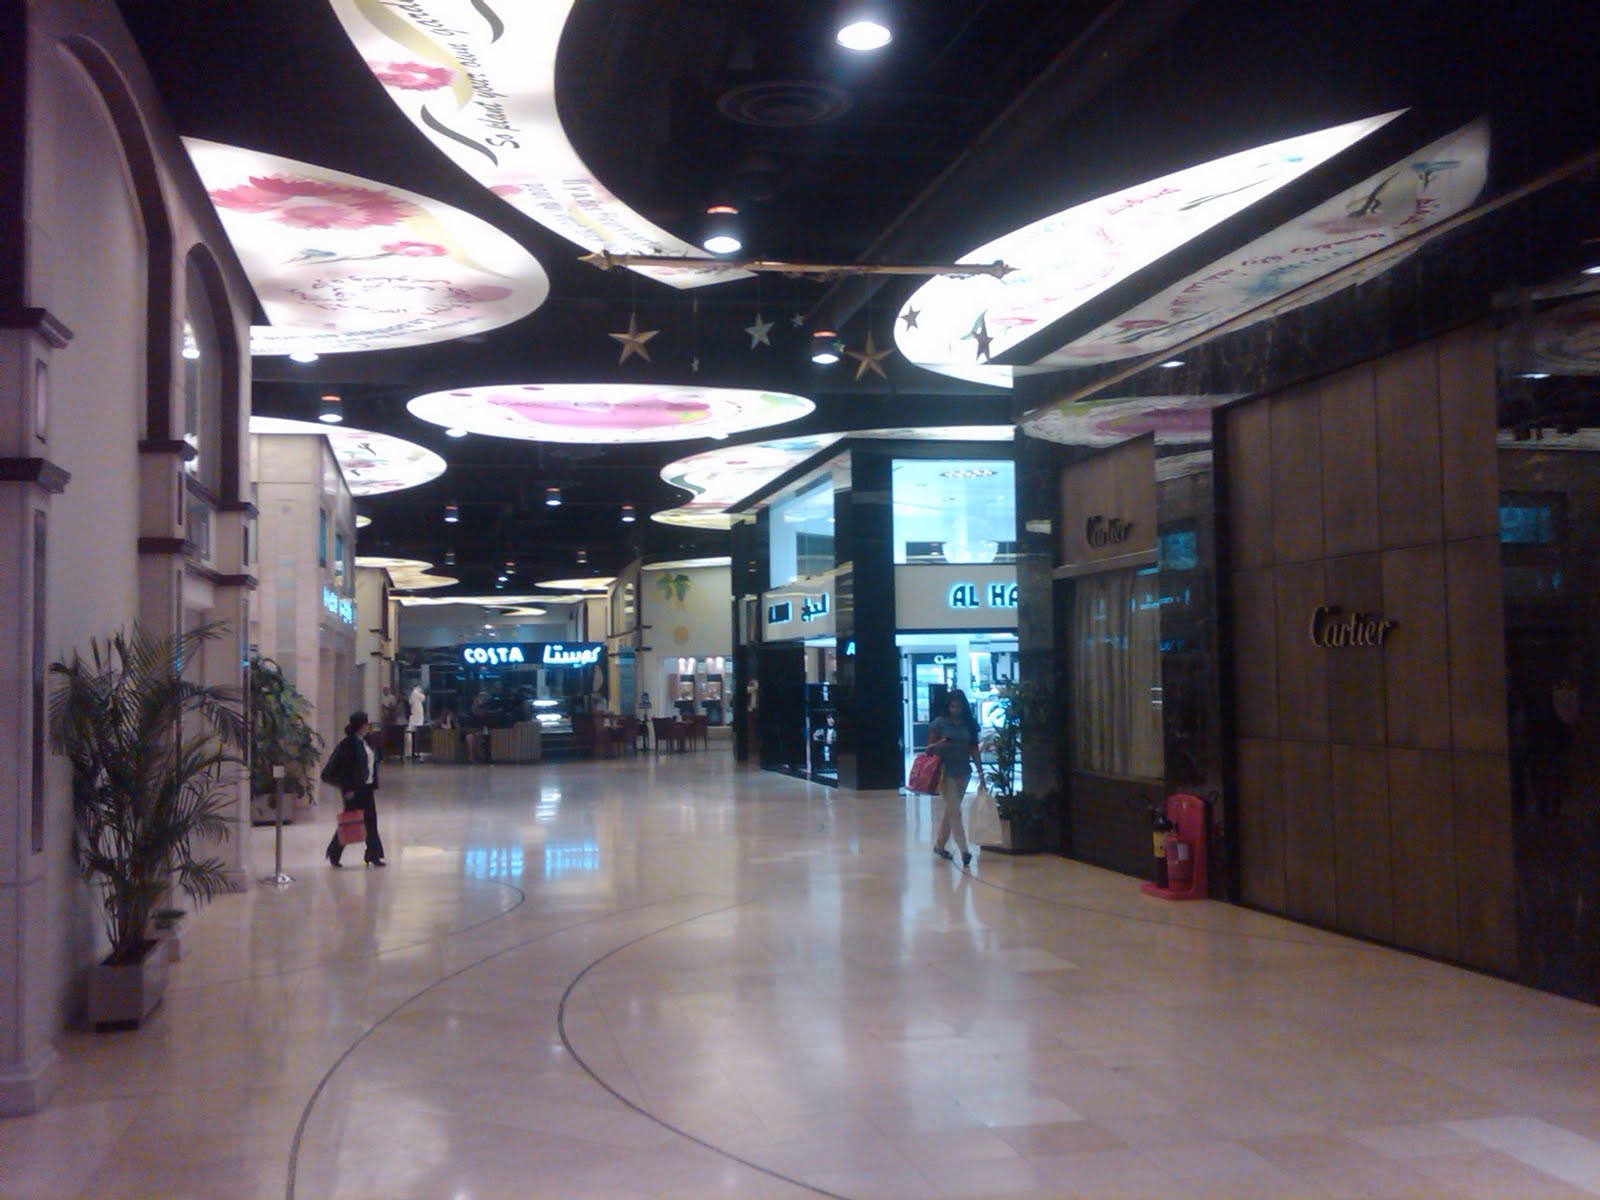 Louis Vuitton  Moda Mall Bahrain